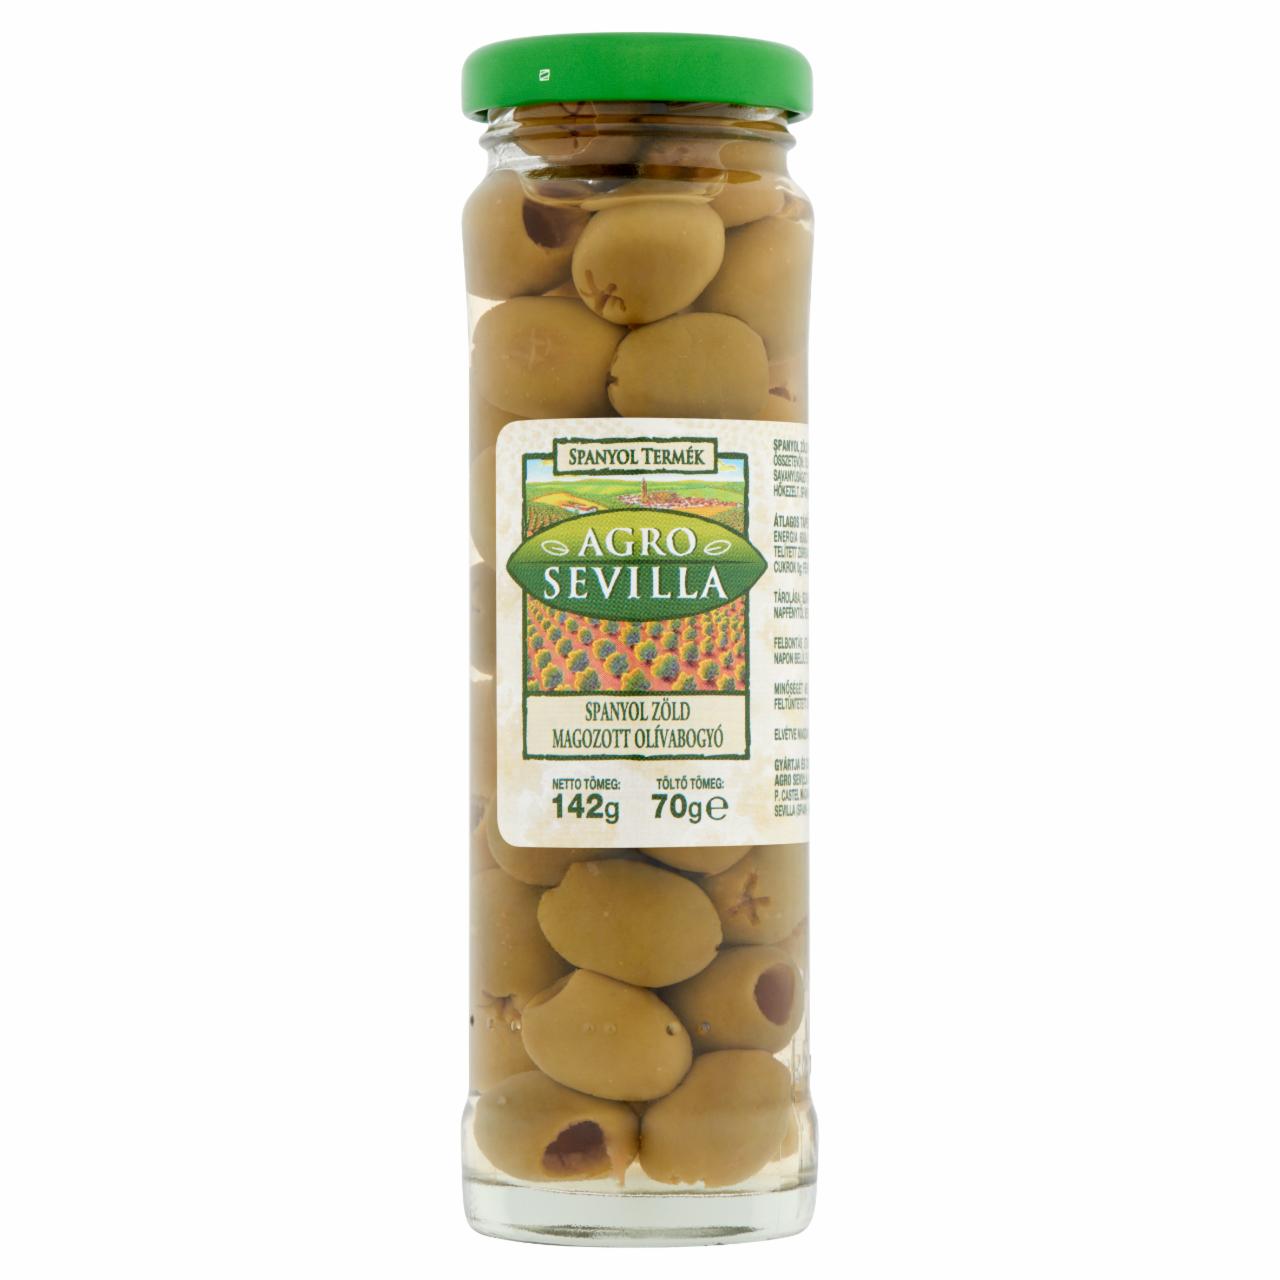 Képek - Agro Sevilla spanyol zöld magozott olívabogyó 142 g